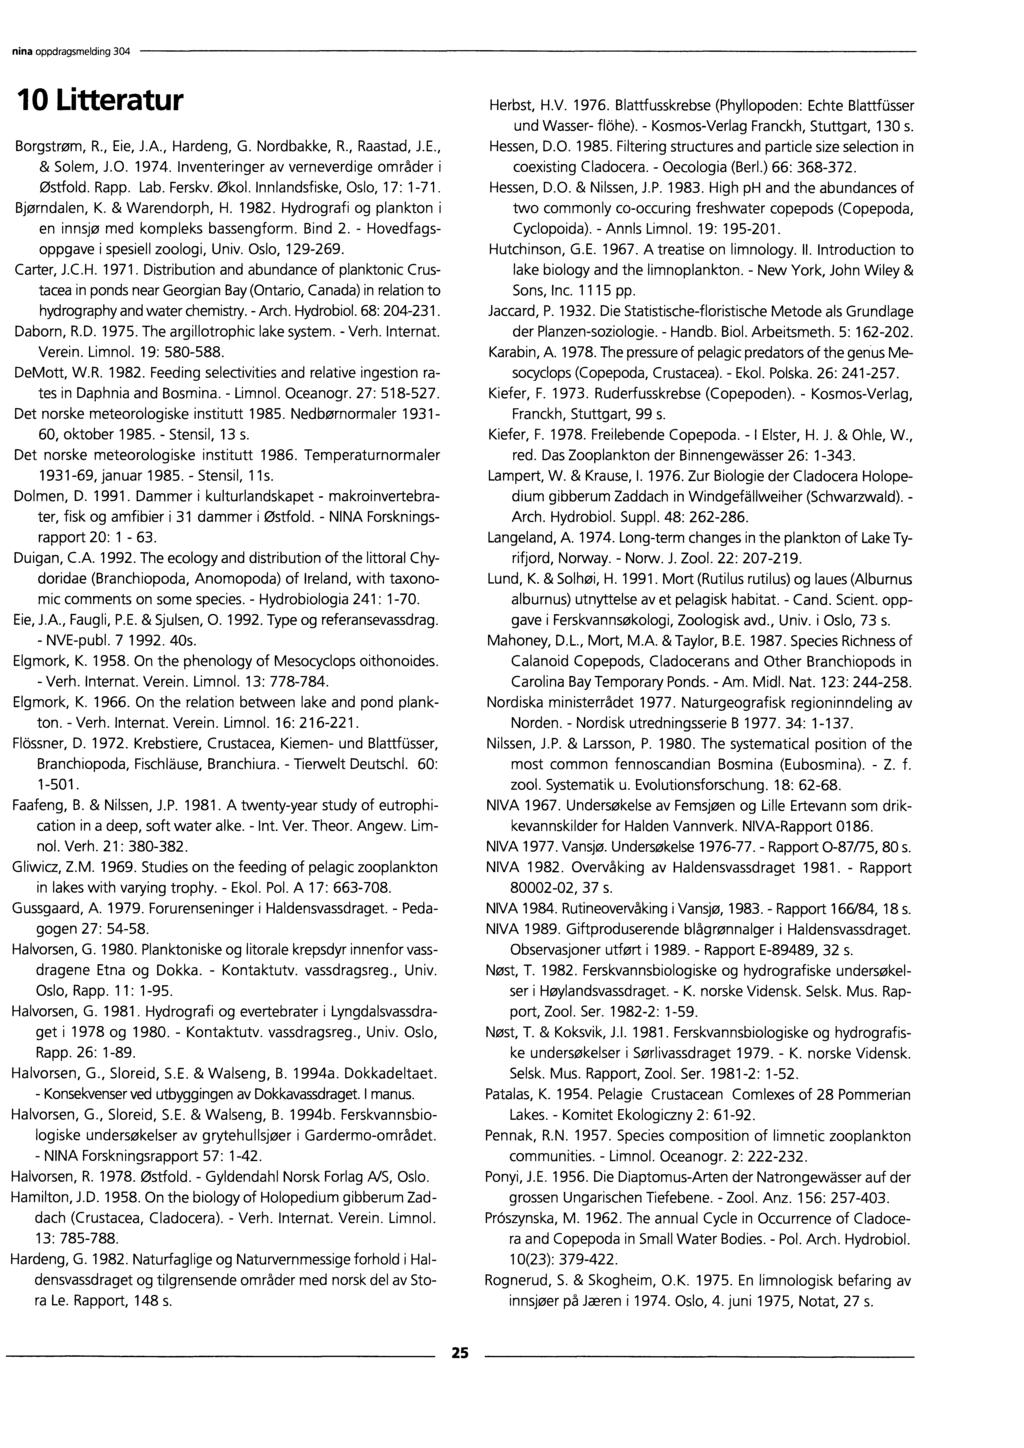 ninaoppdragsmelding 304 10 Litteratur Borgstrøm, R., Eie, J.A., Hardeng, G. Nordbakke, R., Raastad, J.E., & Solem, J.O. 1974. Inventeringer av verneverdige områder i Østfold. Rapp. Lab. Ferskv. Økol.